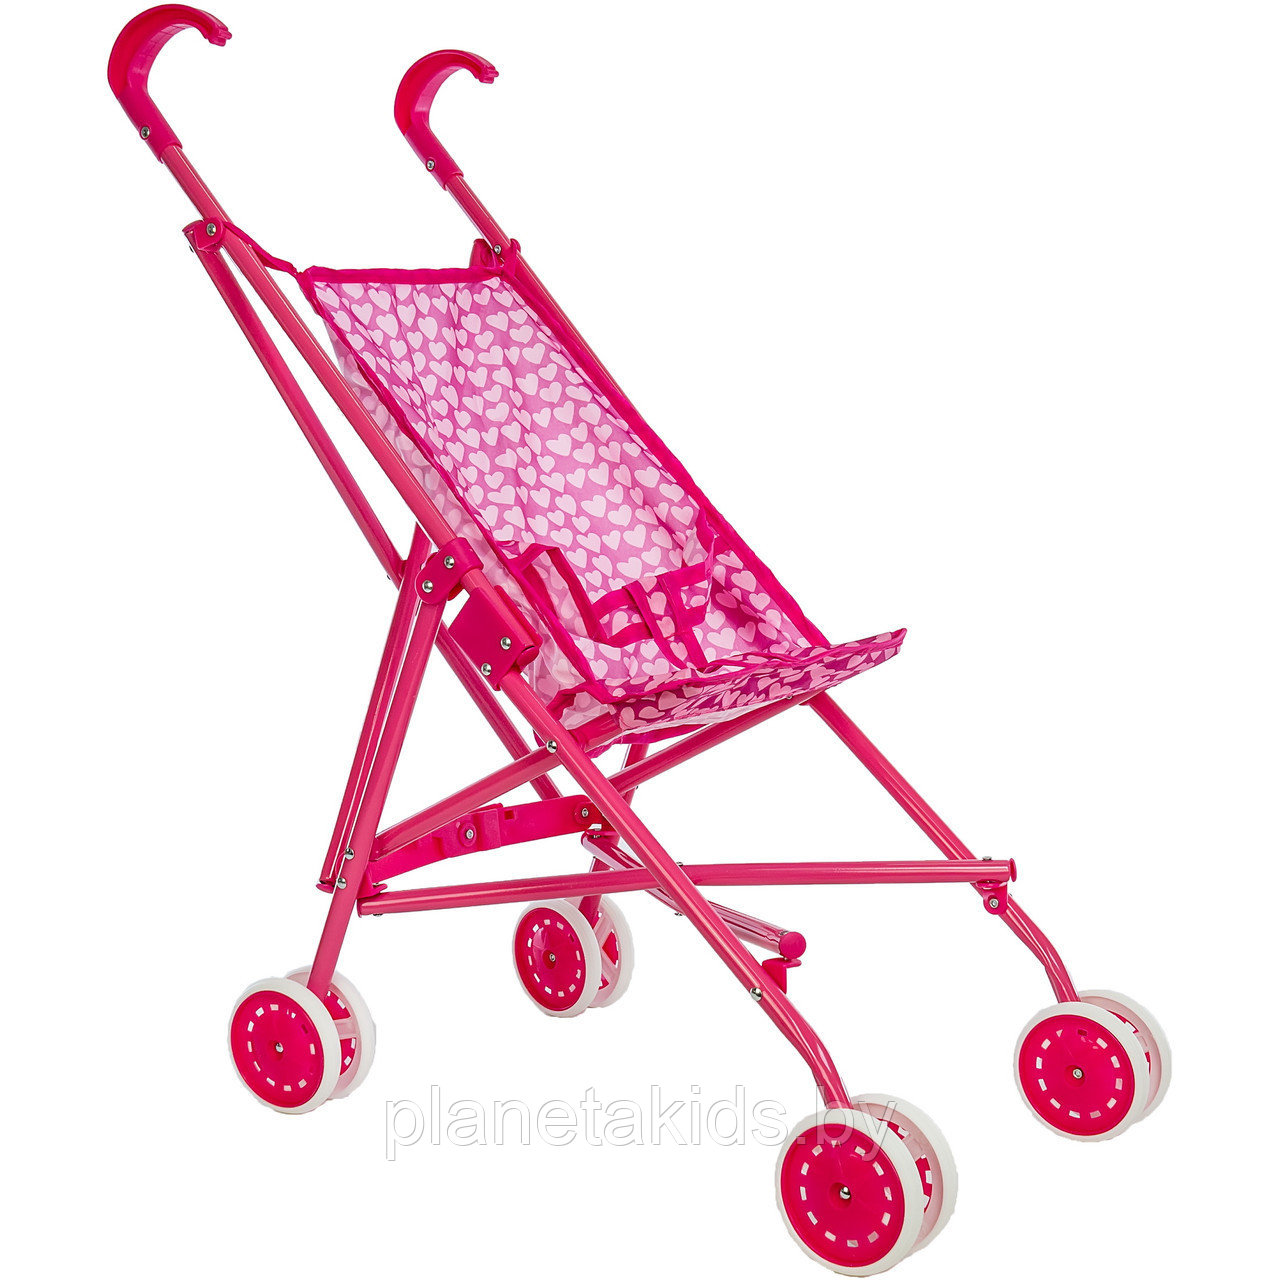 Детская металлическая коляска-трость для кукол Melobo/Melogo арт. 9302-1, фото 1